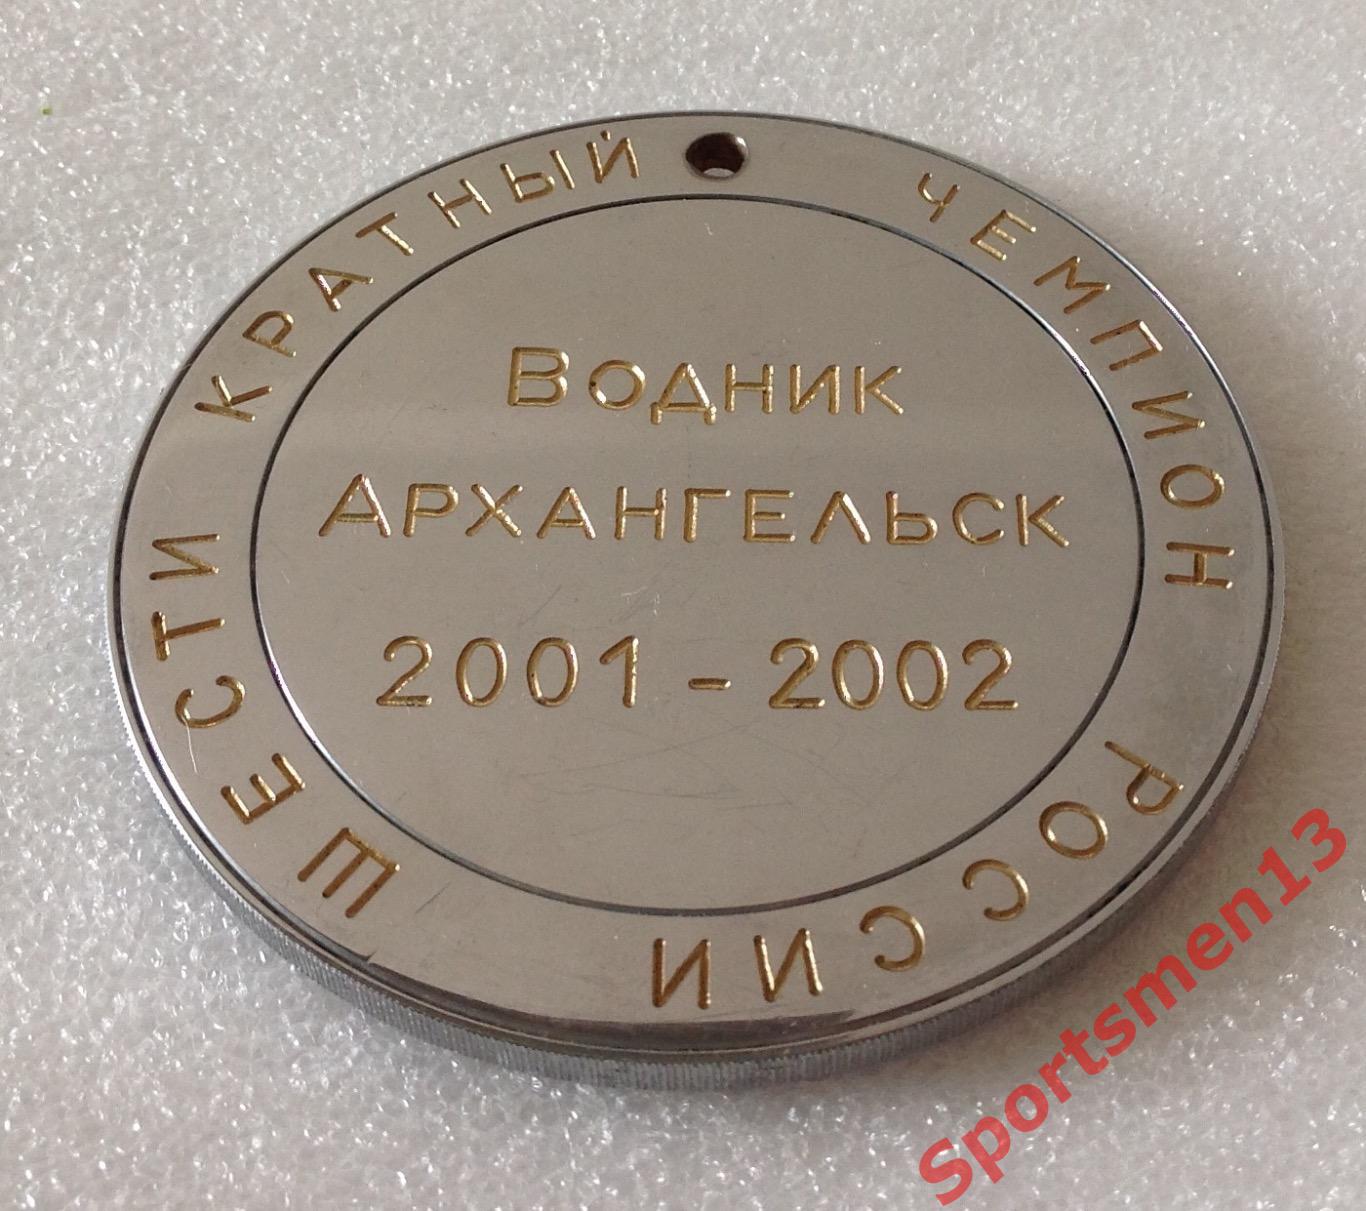 Хоккей с мячом. Медаль памятная. Водник Архангельск, 2002